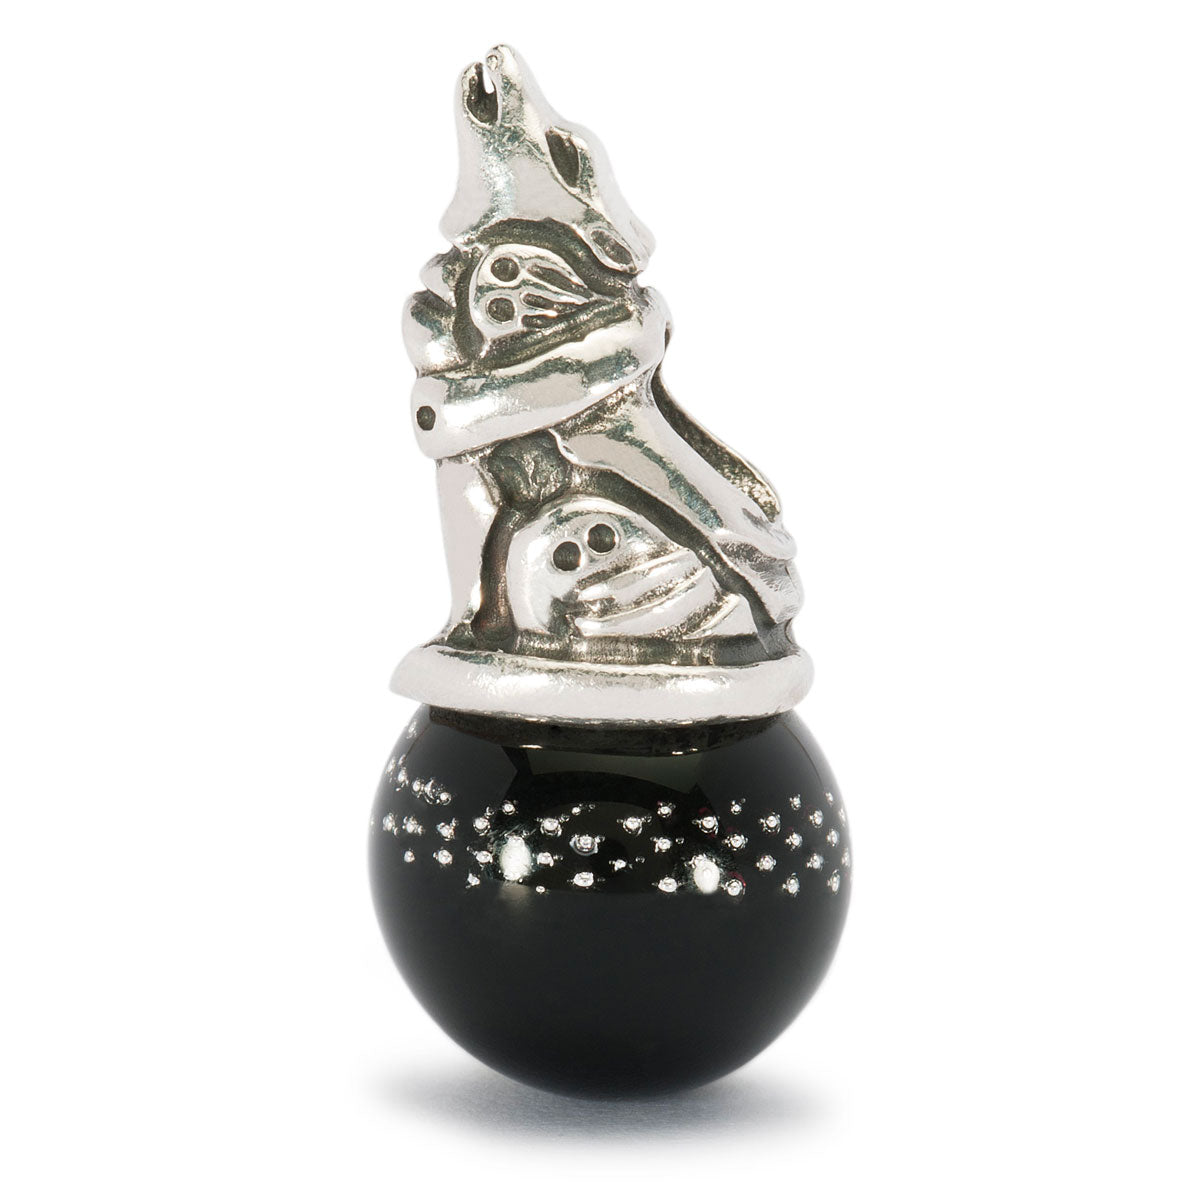 Il beads in argento e vetro Lupo Corazzato raffigura un lupo, seduto su una pallina in vetro di colore nero, che ulula.